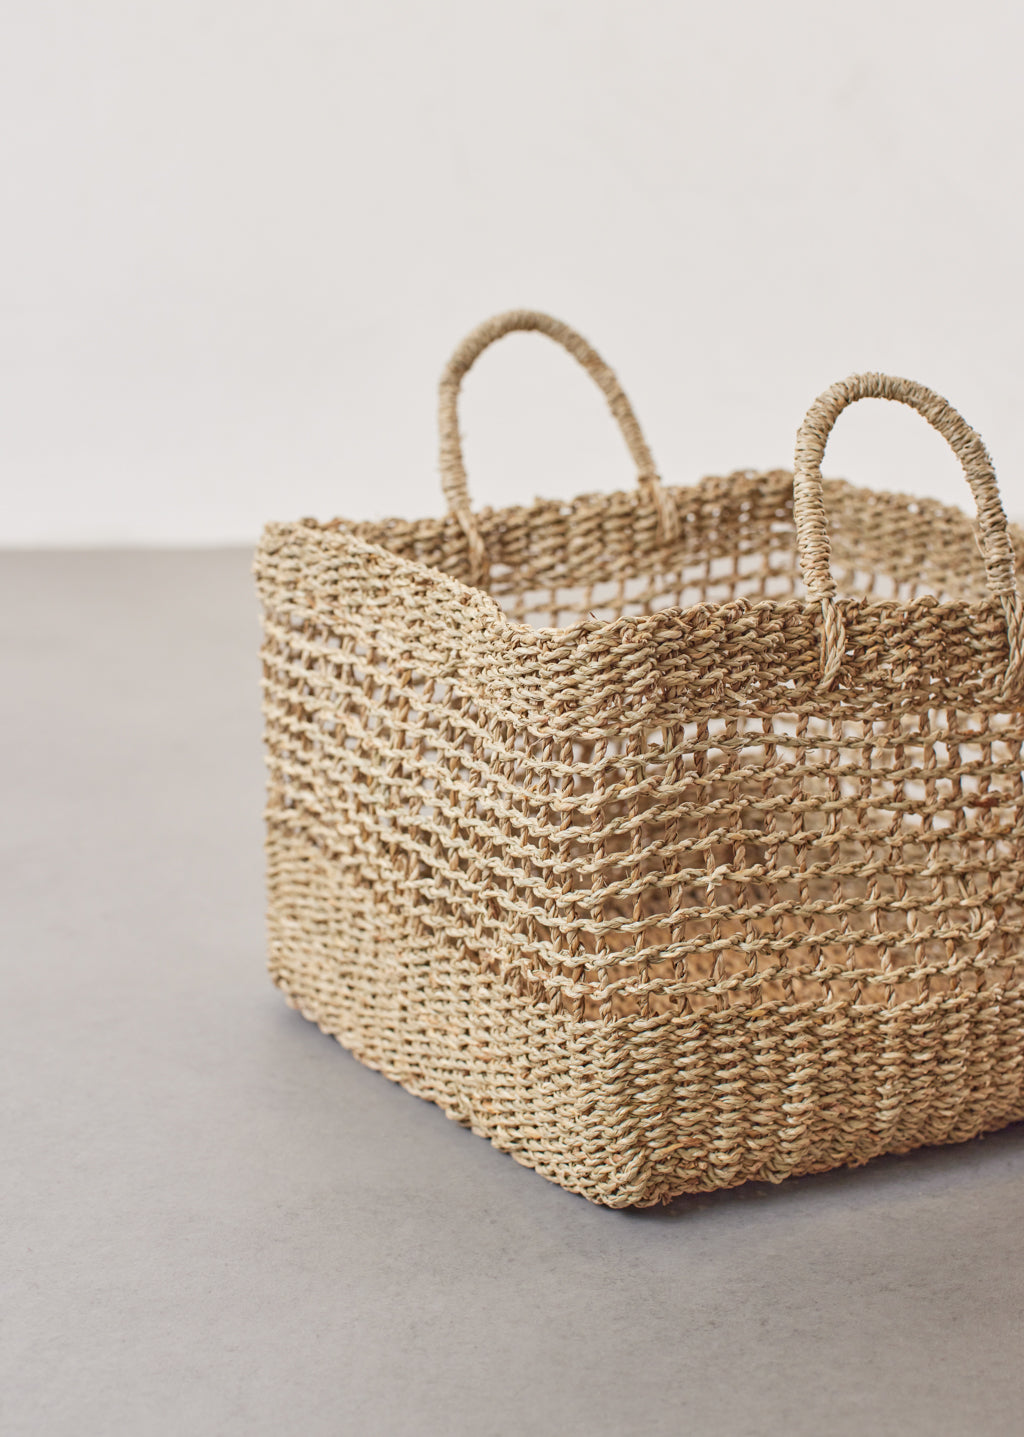 Medium Square Seagrass Basket